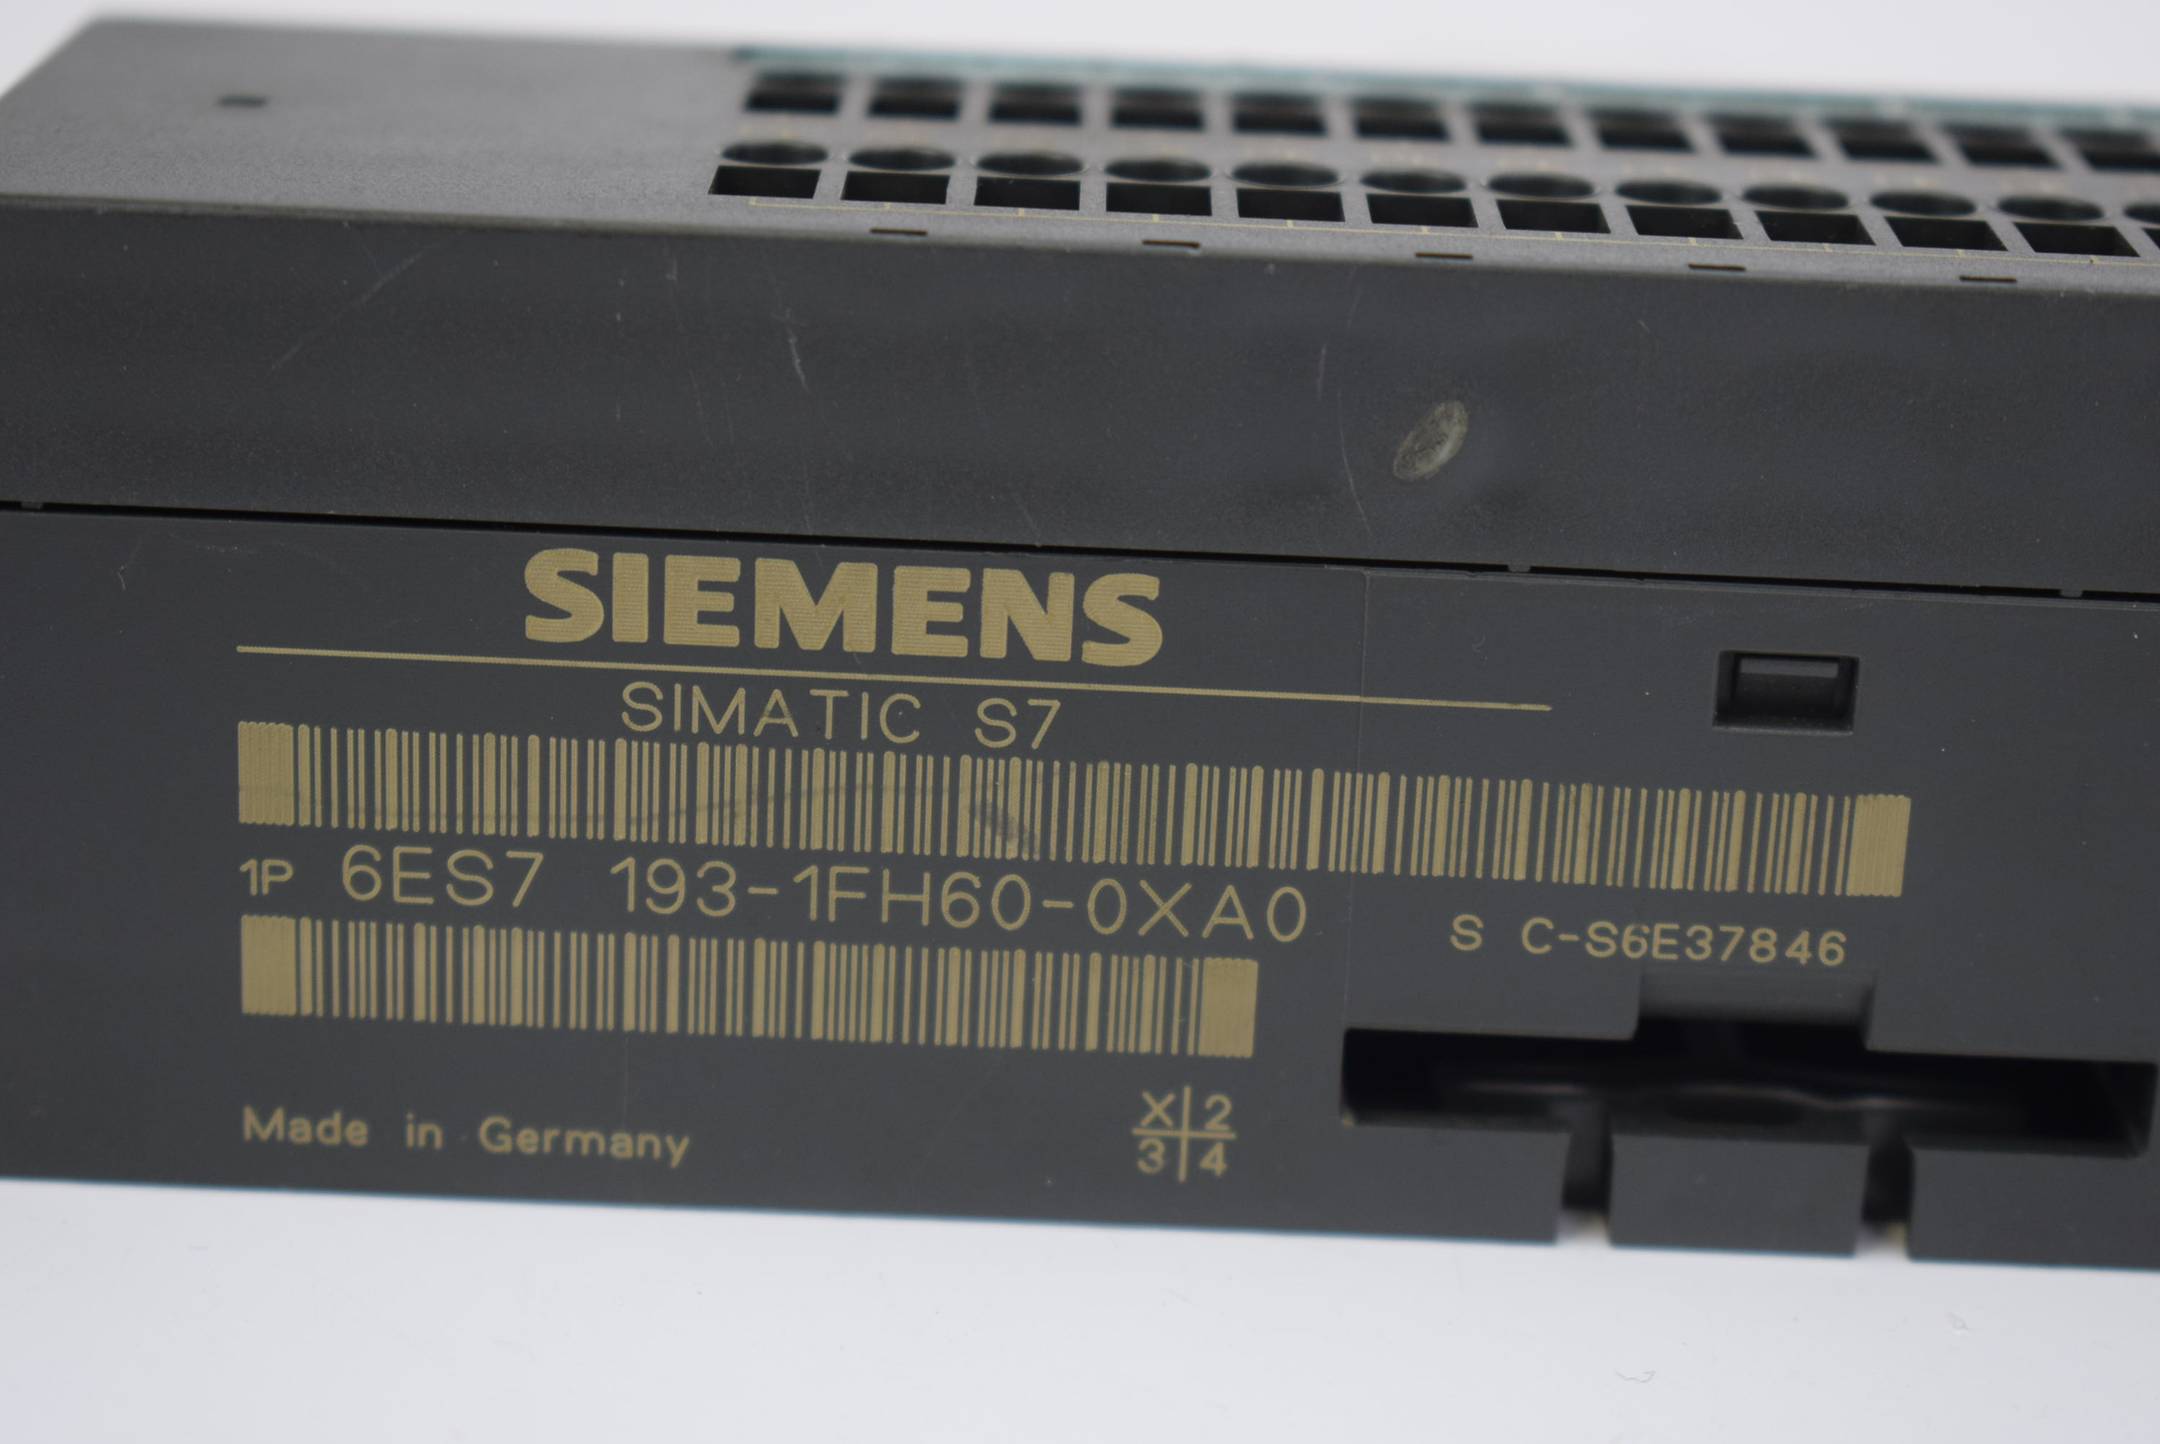 Siemens simatic S7 Terminal Modul 6ES7193-1FH60-0XA0 ( 6ES7 193-1FH60-0XA0 )